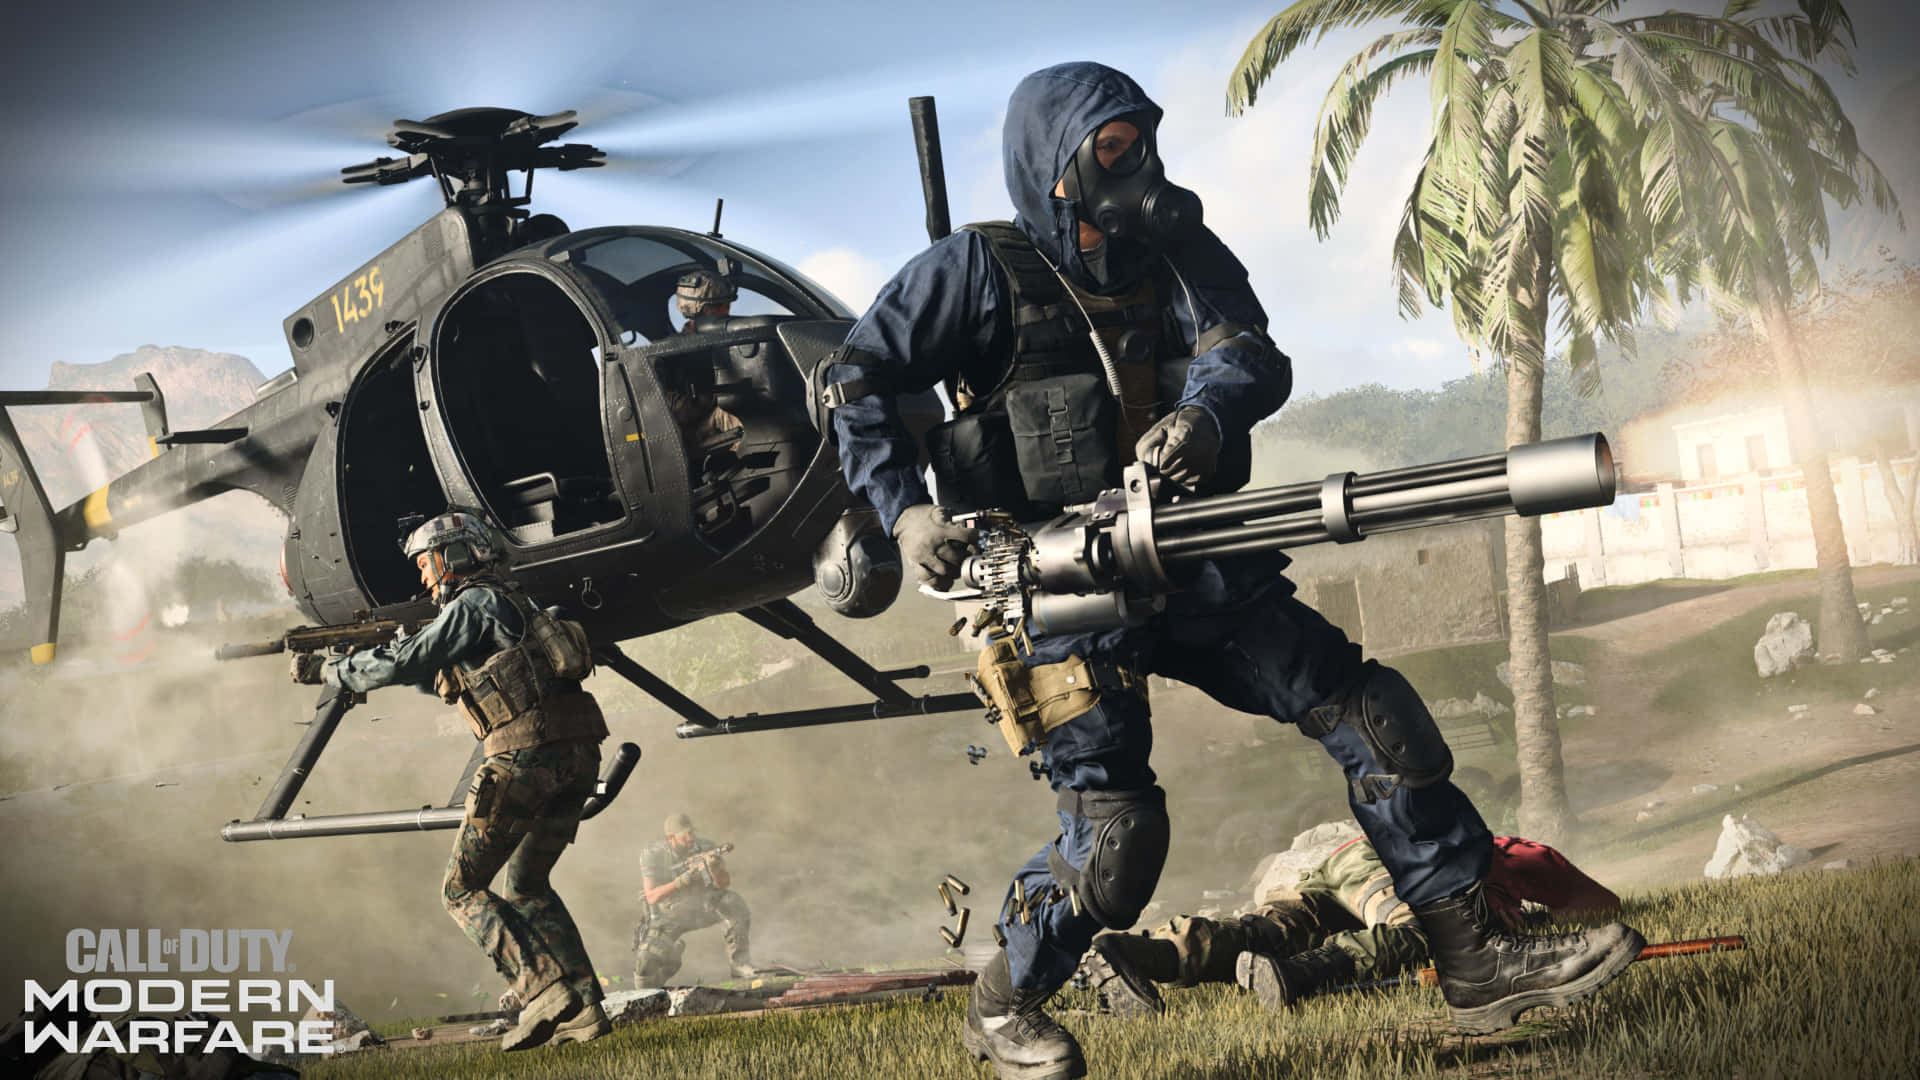 Antiluftskyts Klar Til At Nedskyde Indkommende Trusler I Call Of Duty: Modern Warfare.